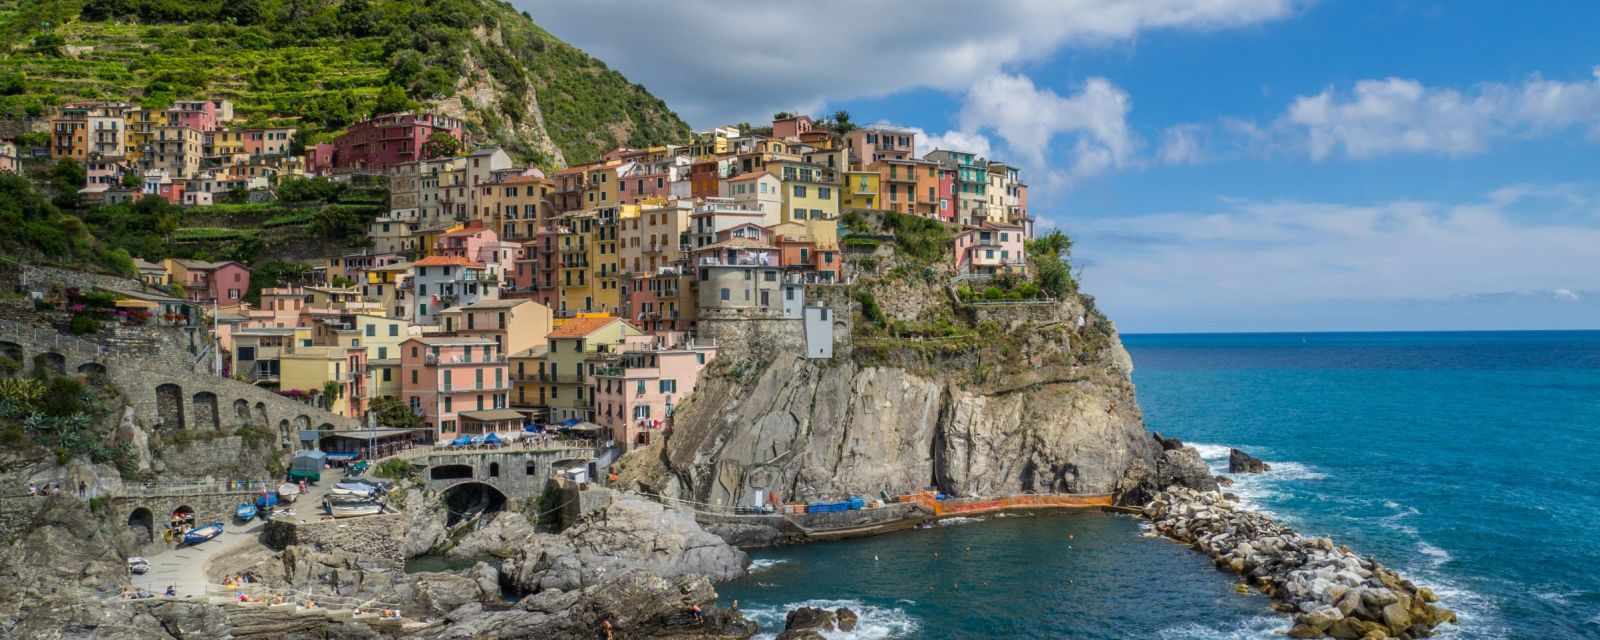 Cinque Terre – Beste Reisezeit und Wanderführer für die 5 schönsten Dörfer Italiens